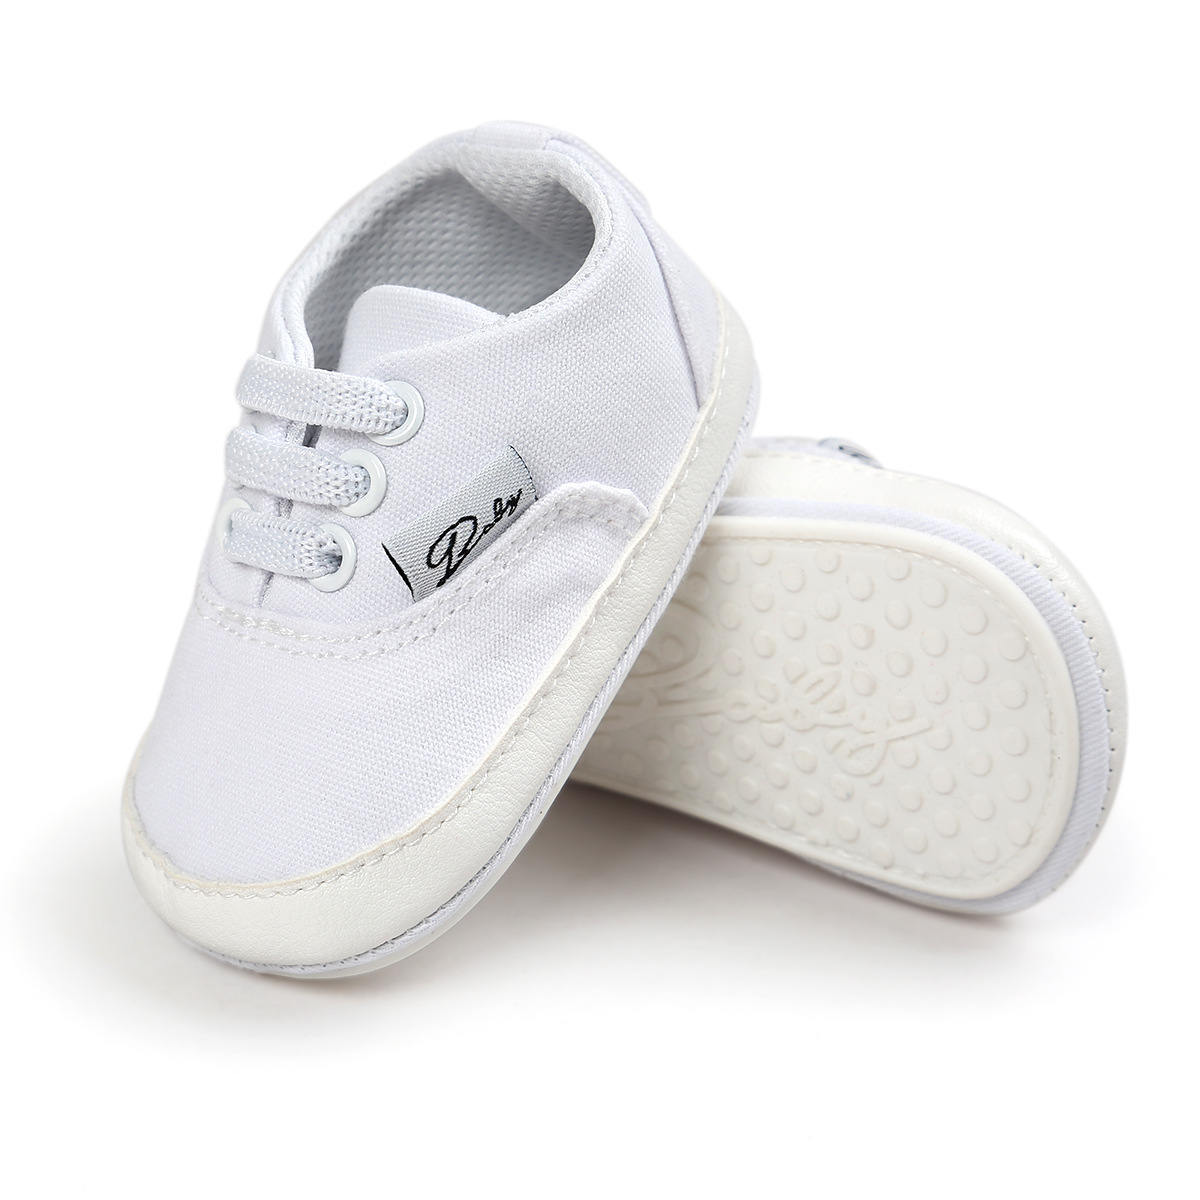 Chaussures bébé en coton - Ref 3436710 Image 79